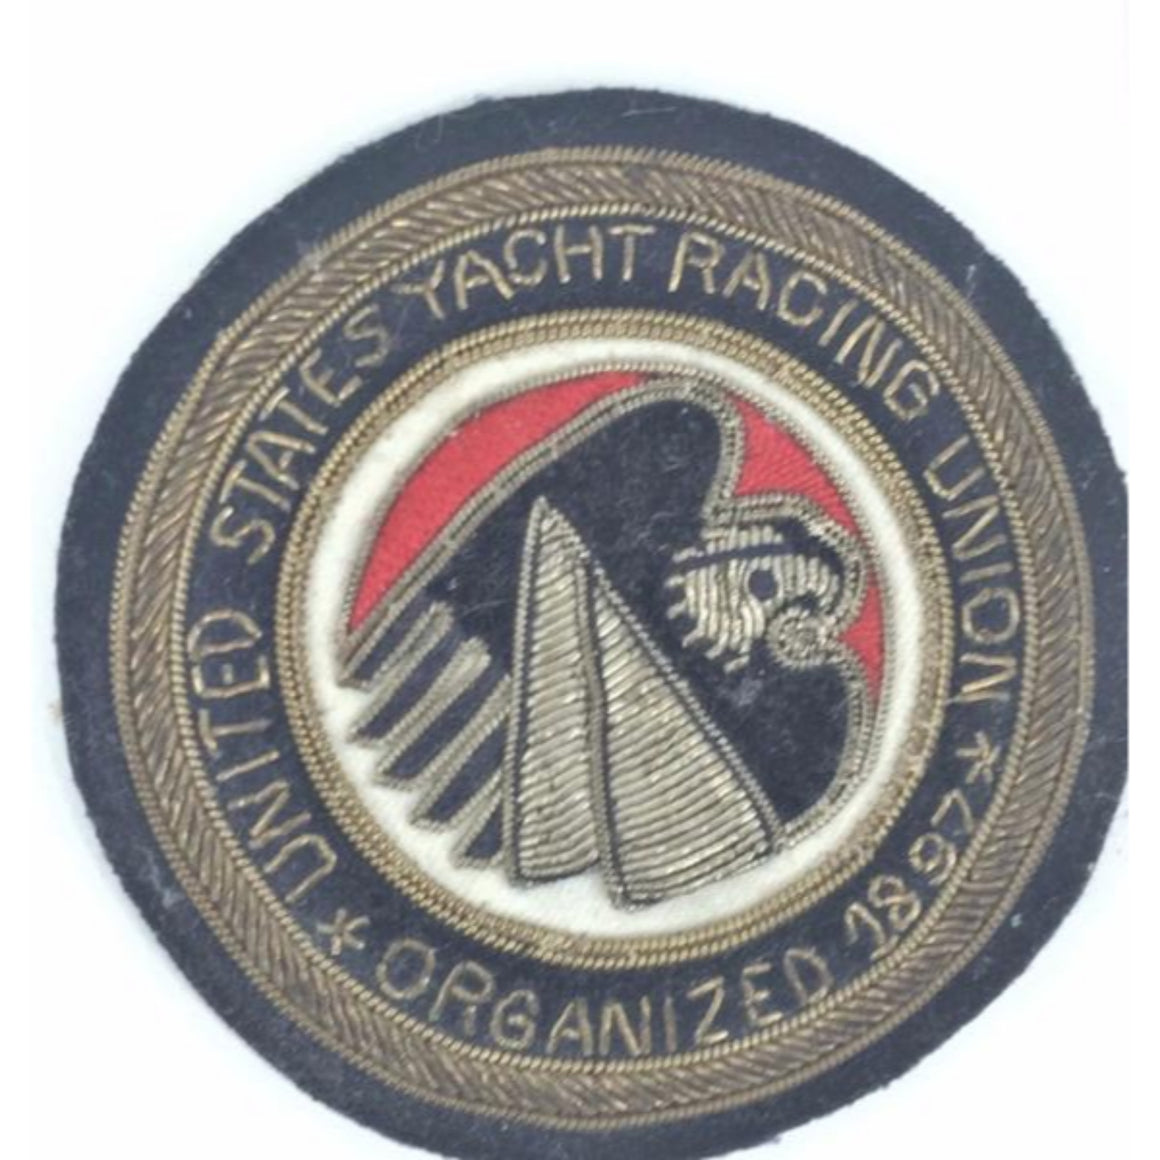 "United States Yacht Racing Union Organized 1897 Bullion Blazer Badge"